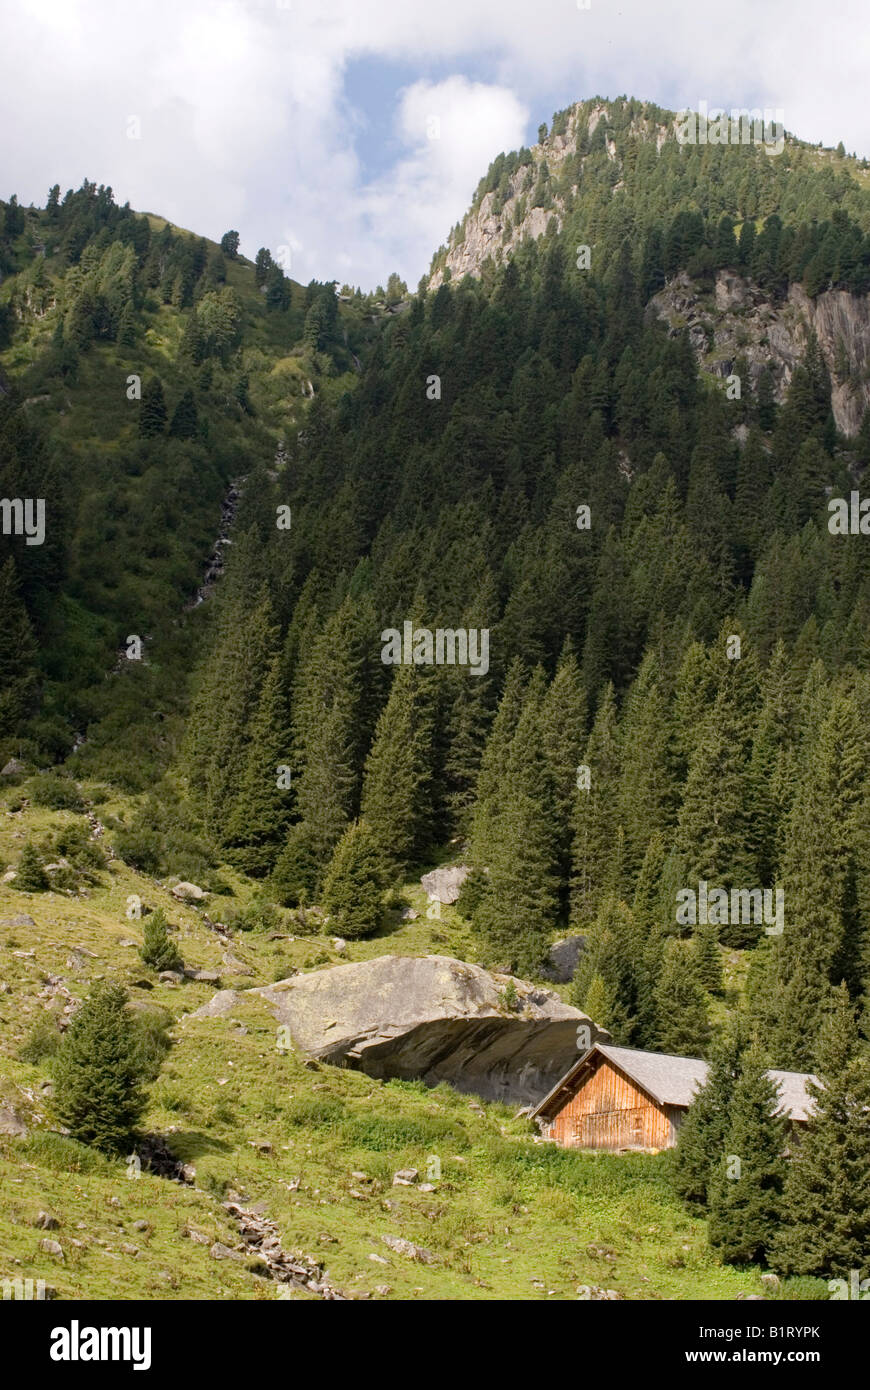 Alm, ferme alpine avec barrière d'avalanche, Wildgerlos-Tal Wildgerlos, vallée, Salzbourg, Autriche, Europe Banque D'Images